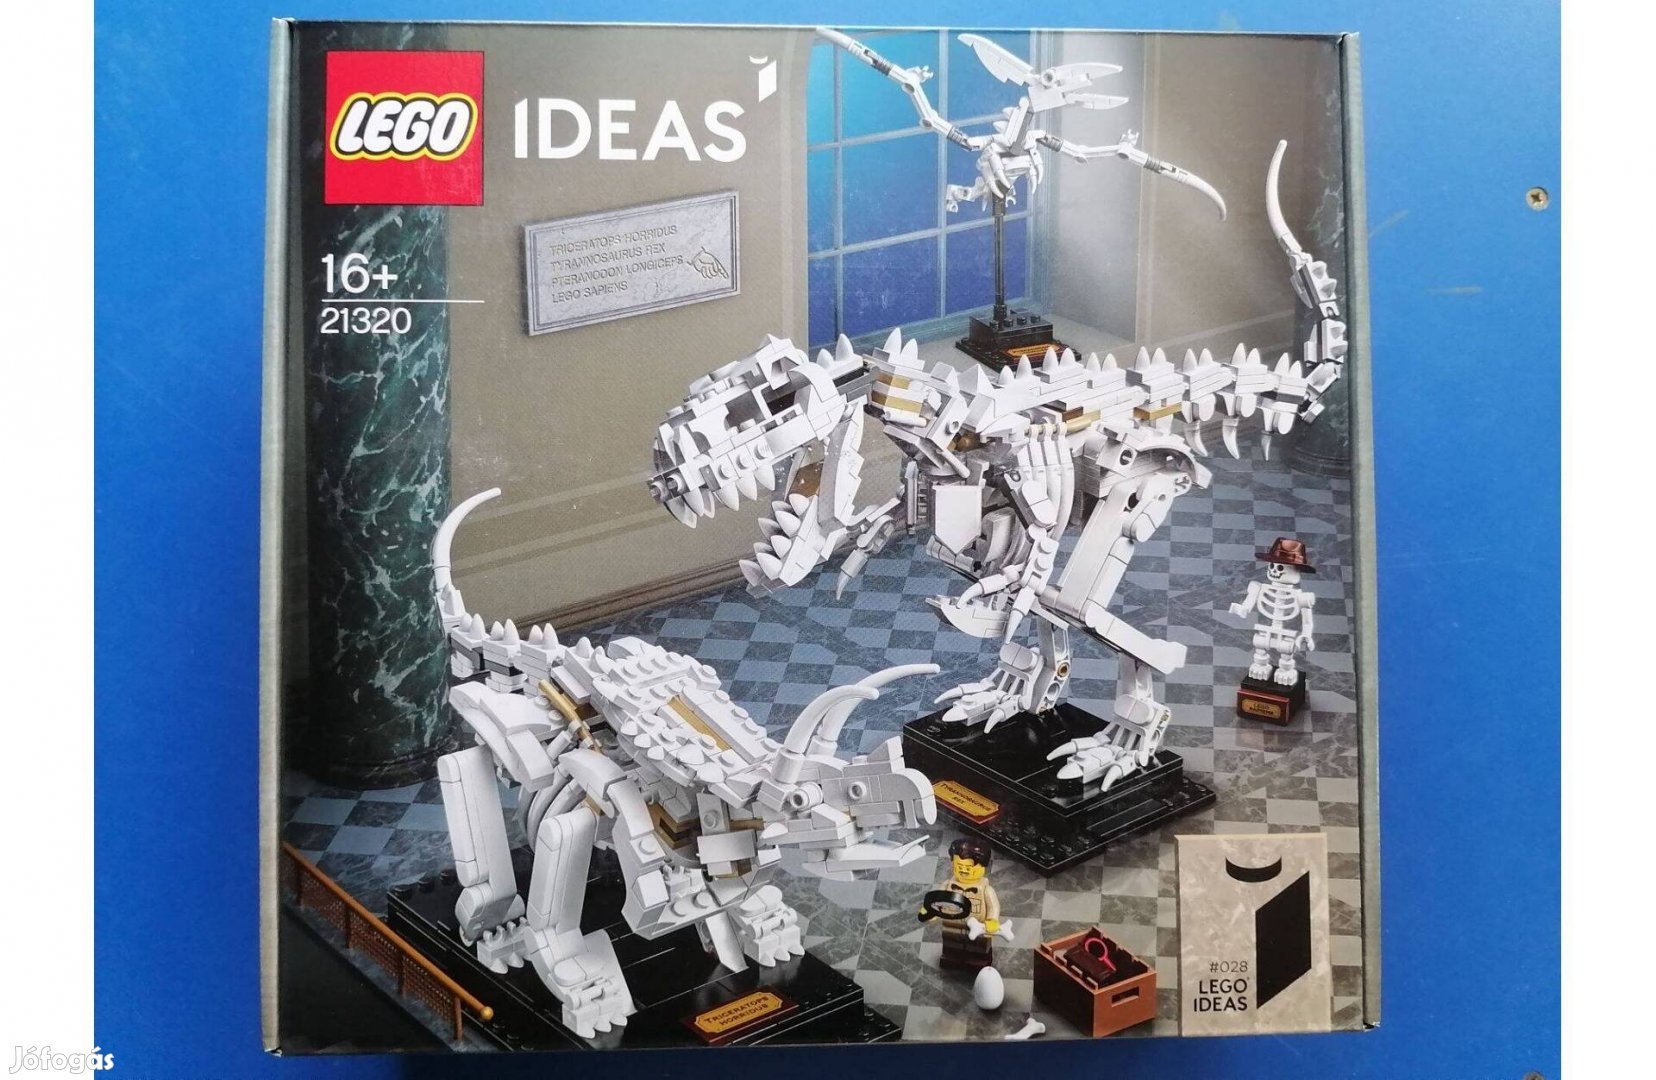 Lego Ideas - Cuusoo 21320 - Dinoszaurusz maradványok új, bontatlan